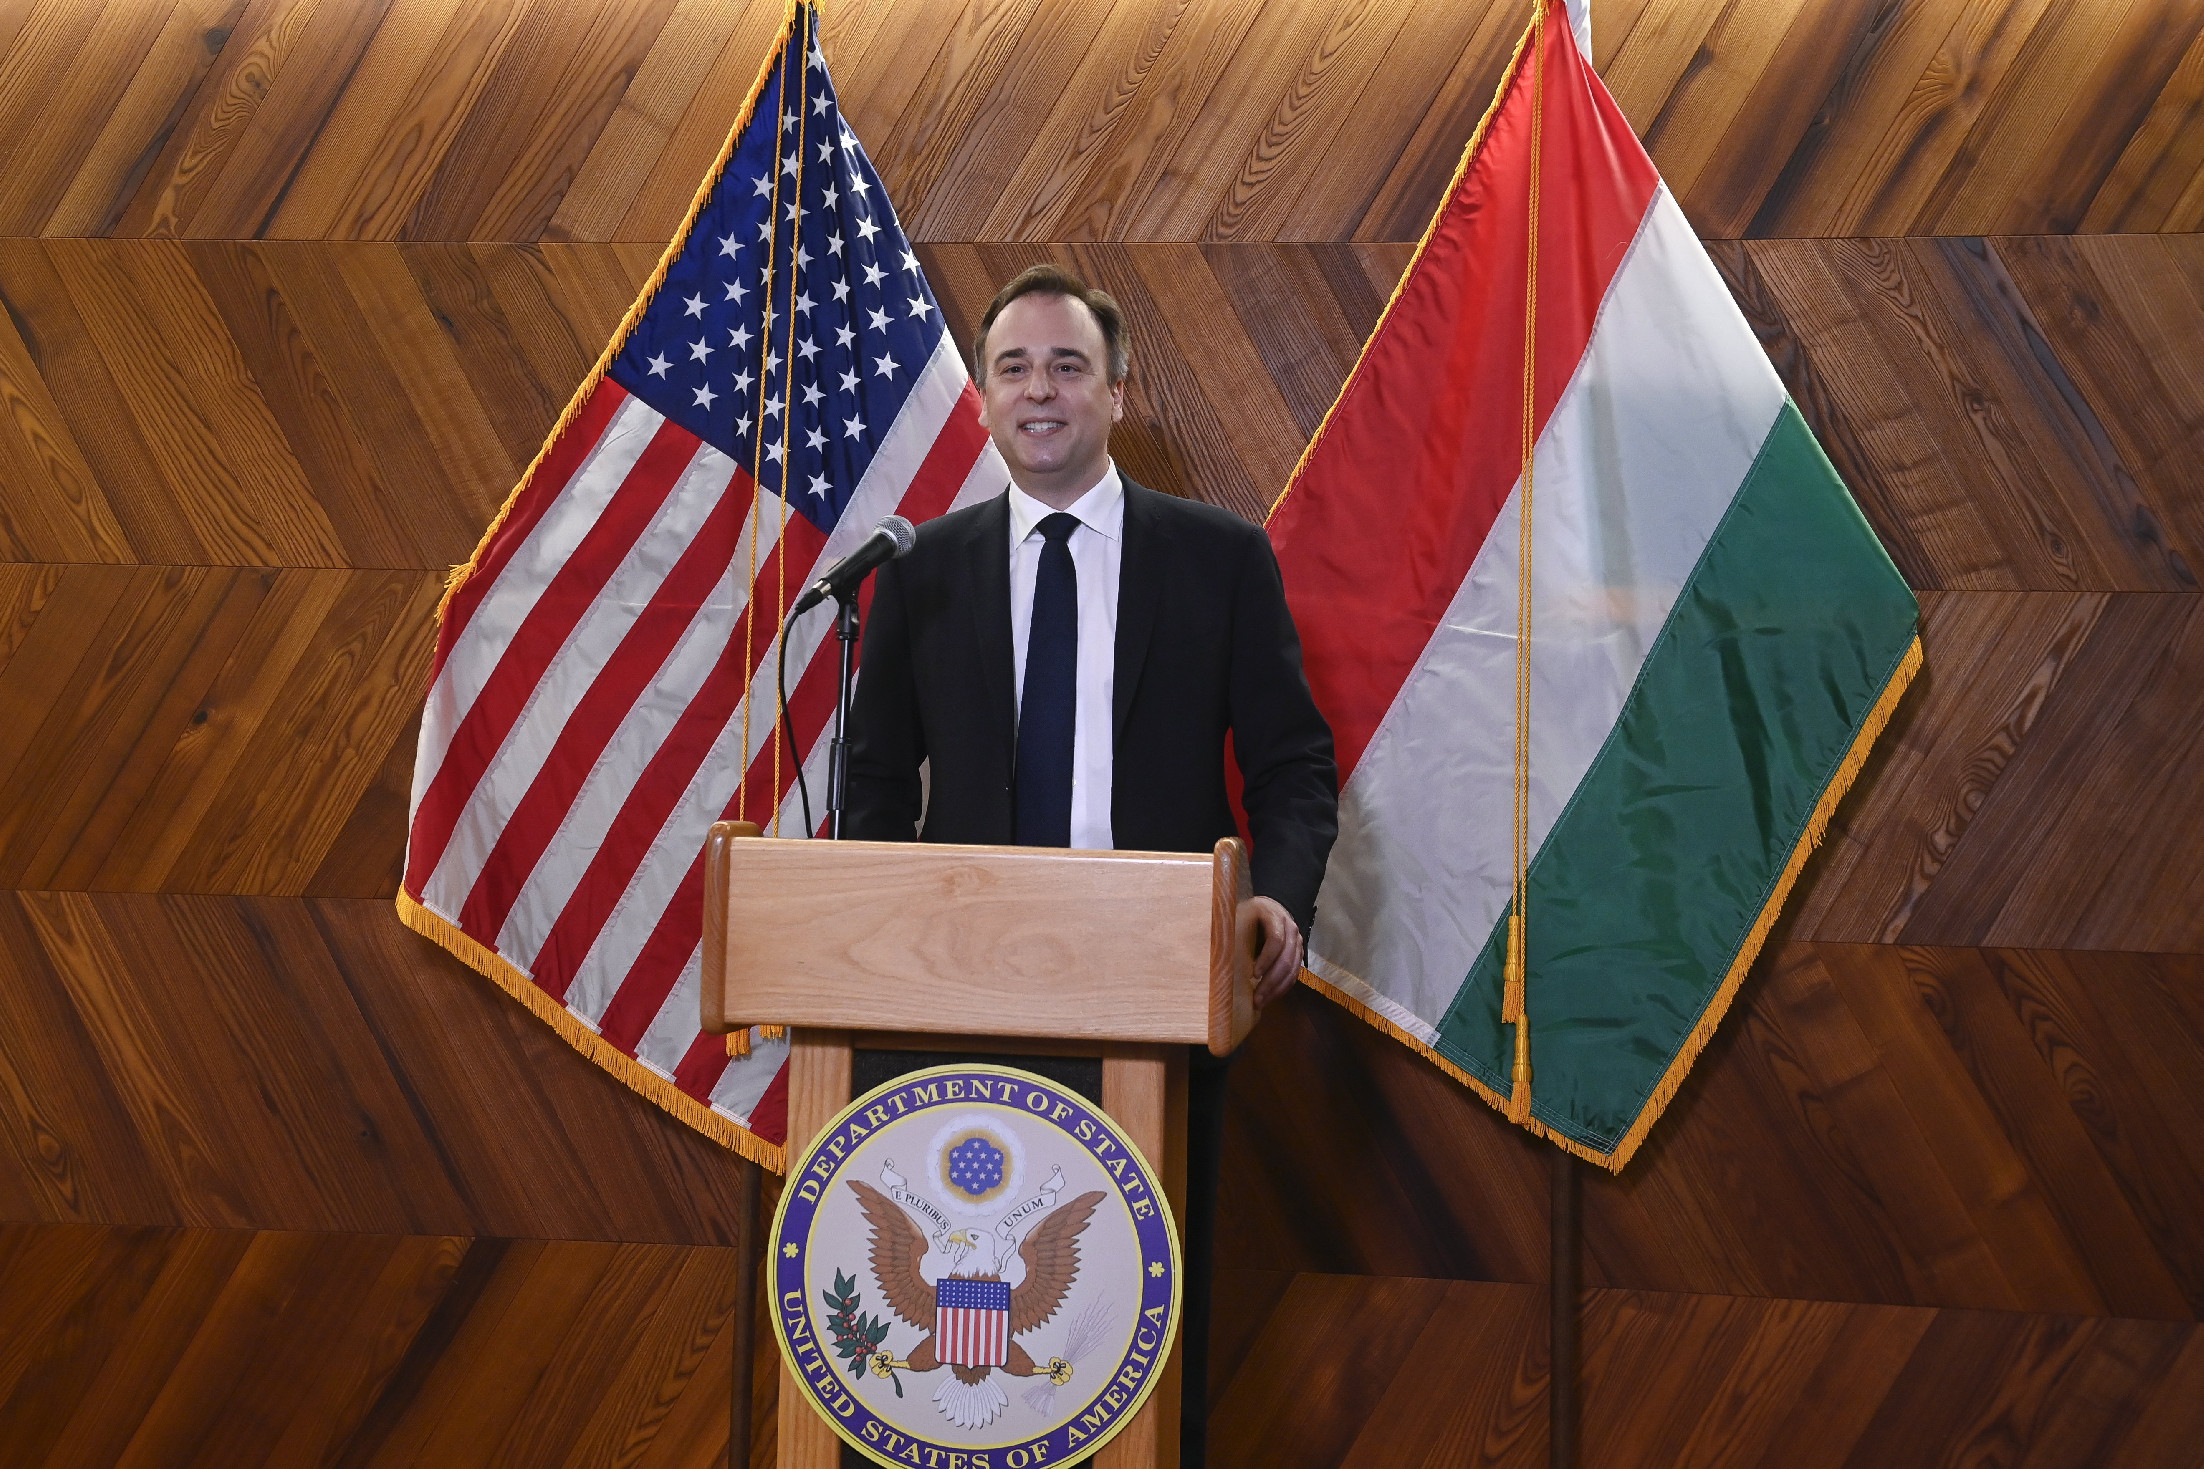 Az amerikai nagykövetség szerint Orbán Viktor is találkozott magas rangú amerikai bíróval